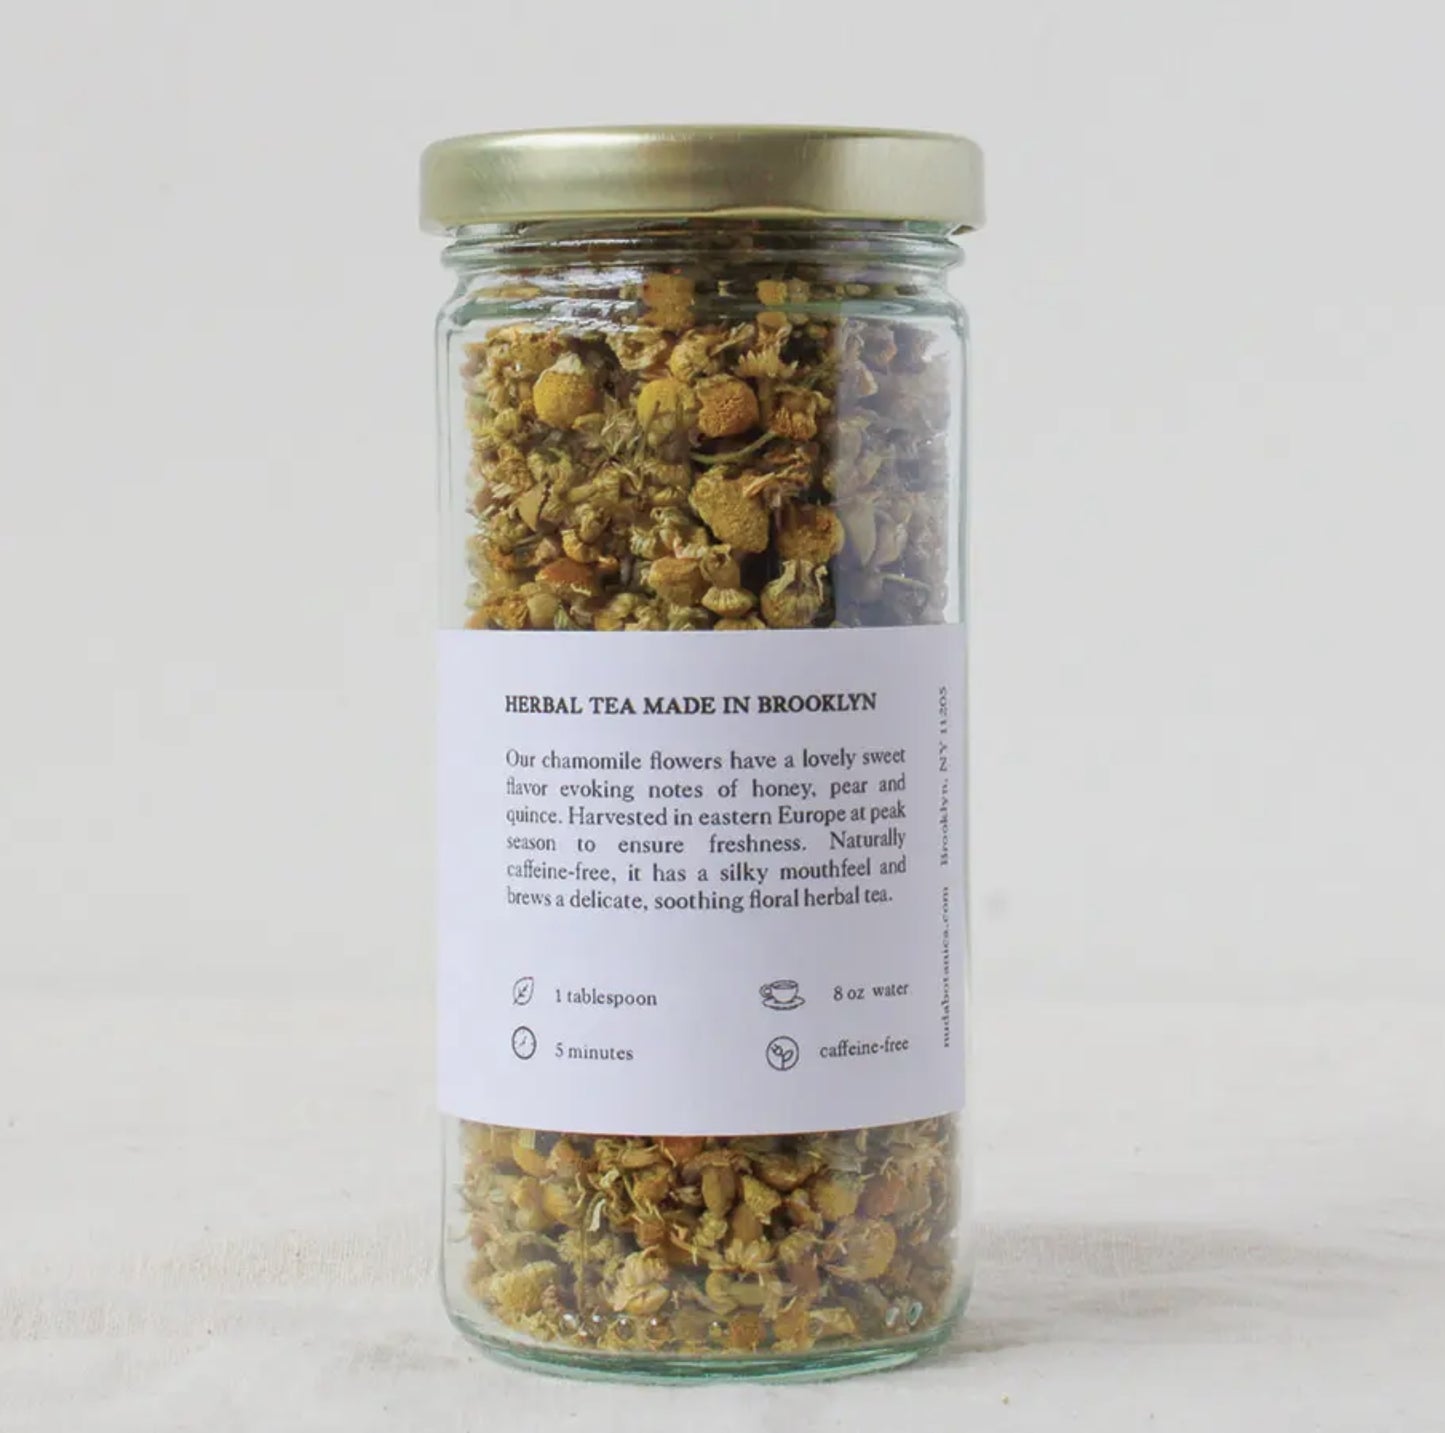 Chamomile - Organic Herbal Tea - Loose Leaf